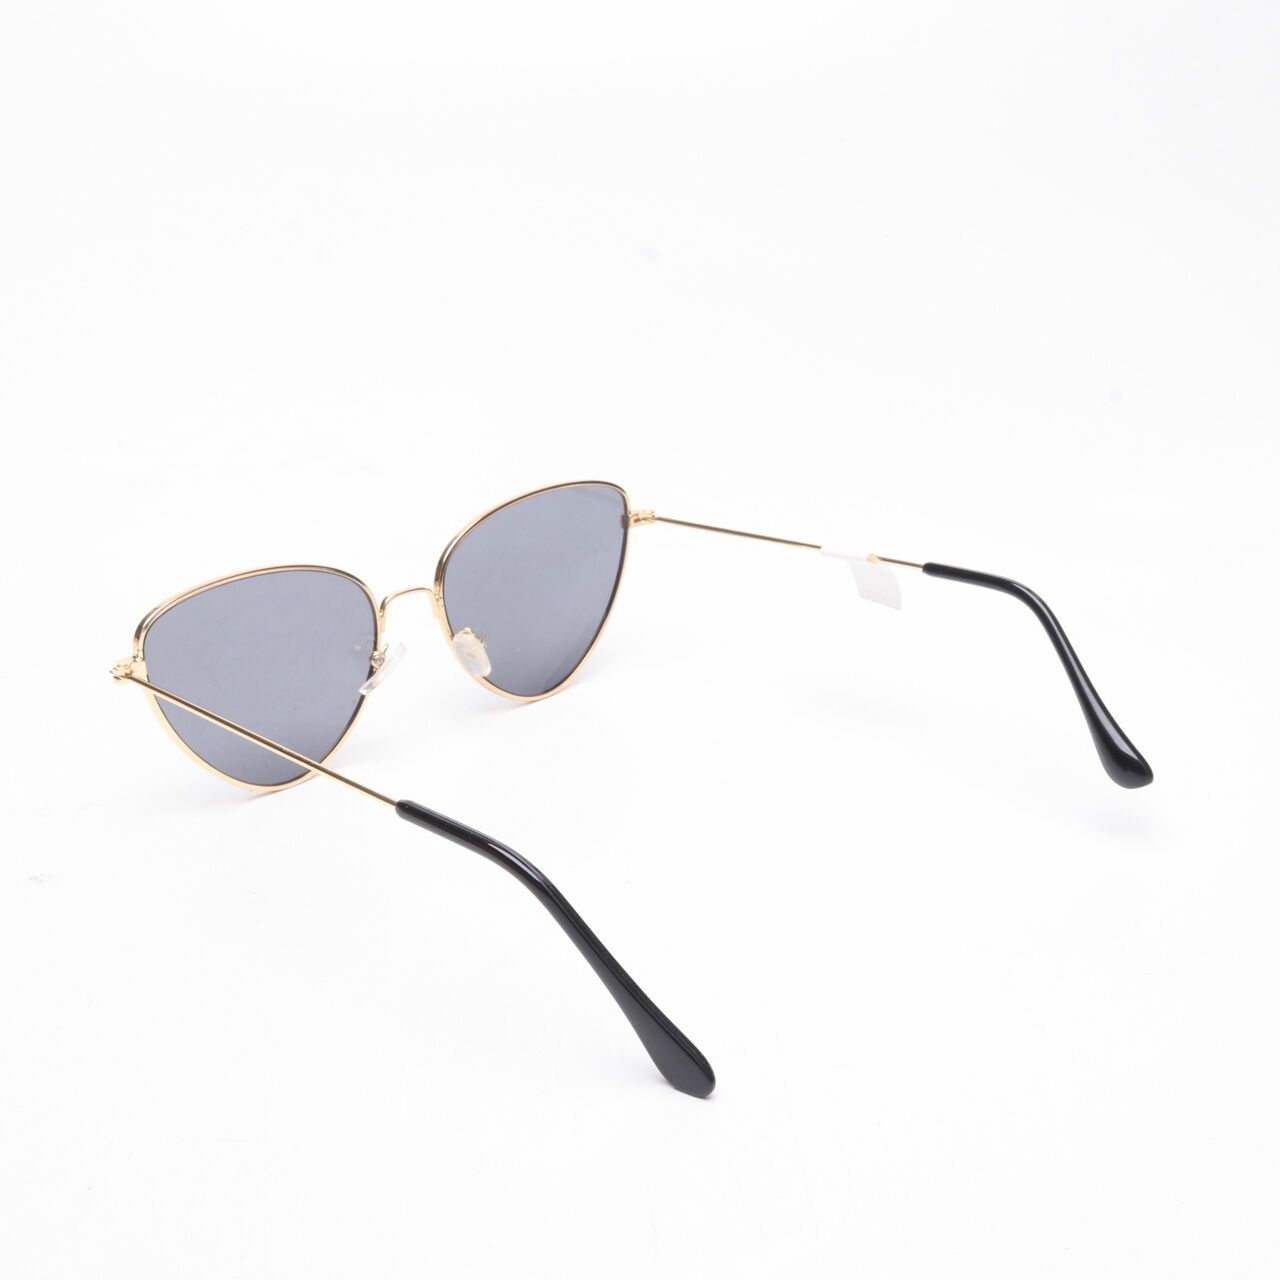 Private Collection Gold/White Sunglasses